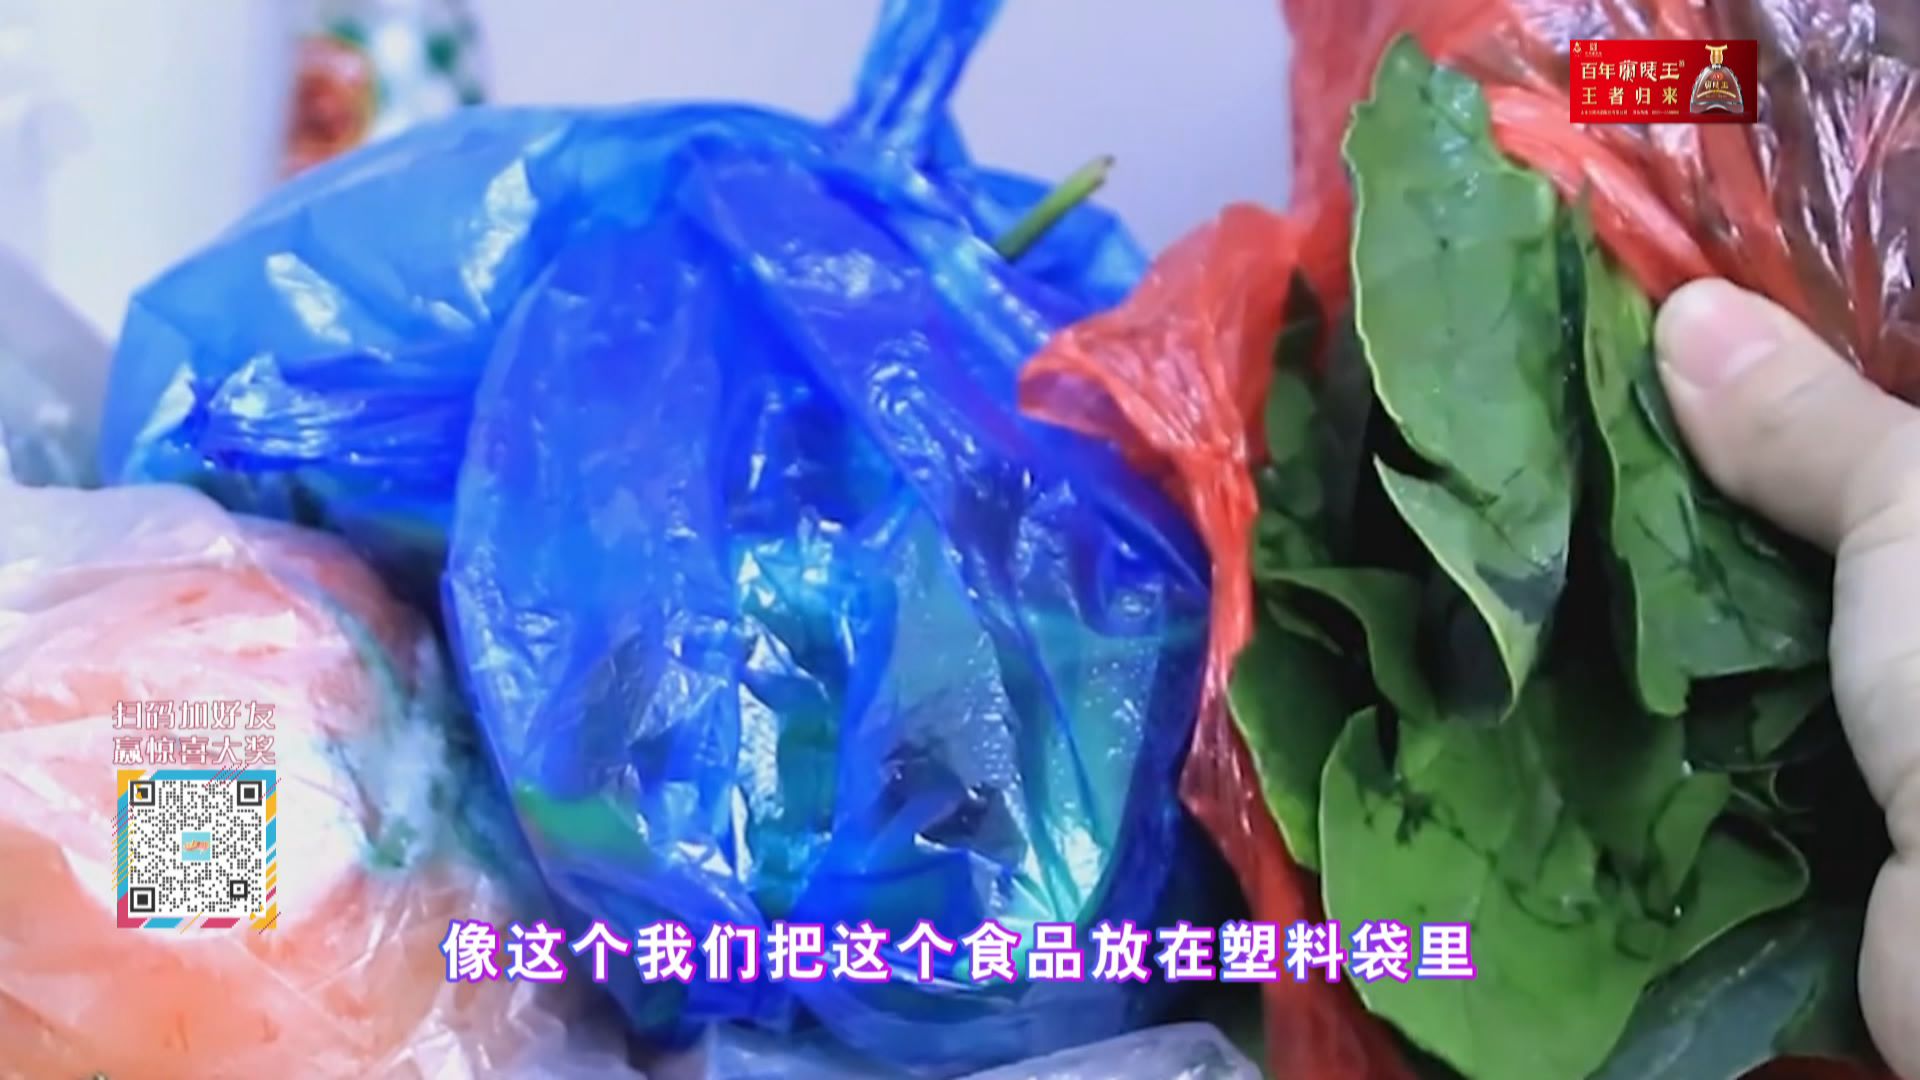 带颜色的塑料袋是否含有致癌物？